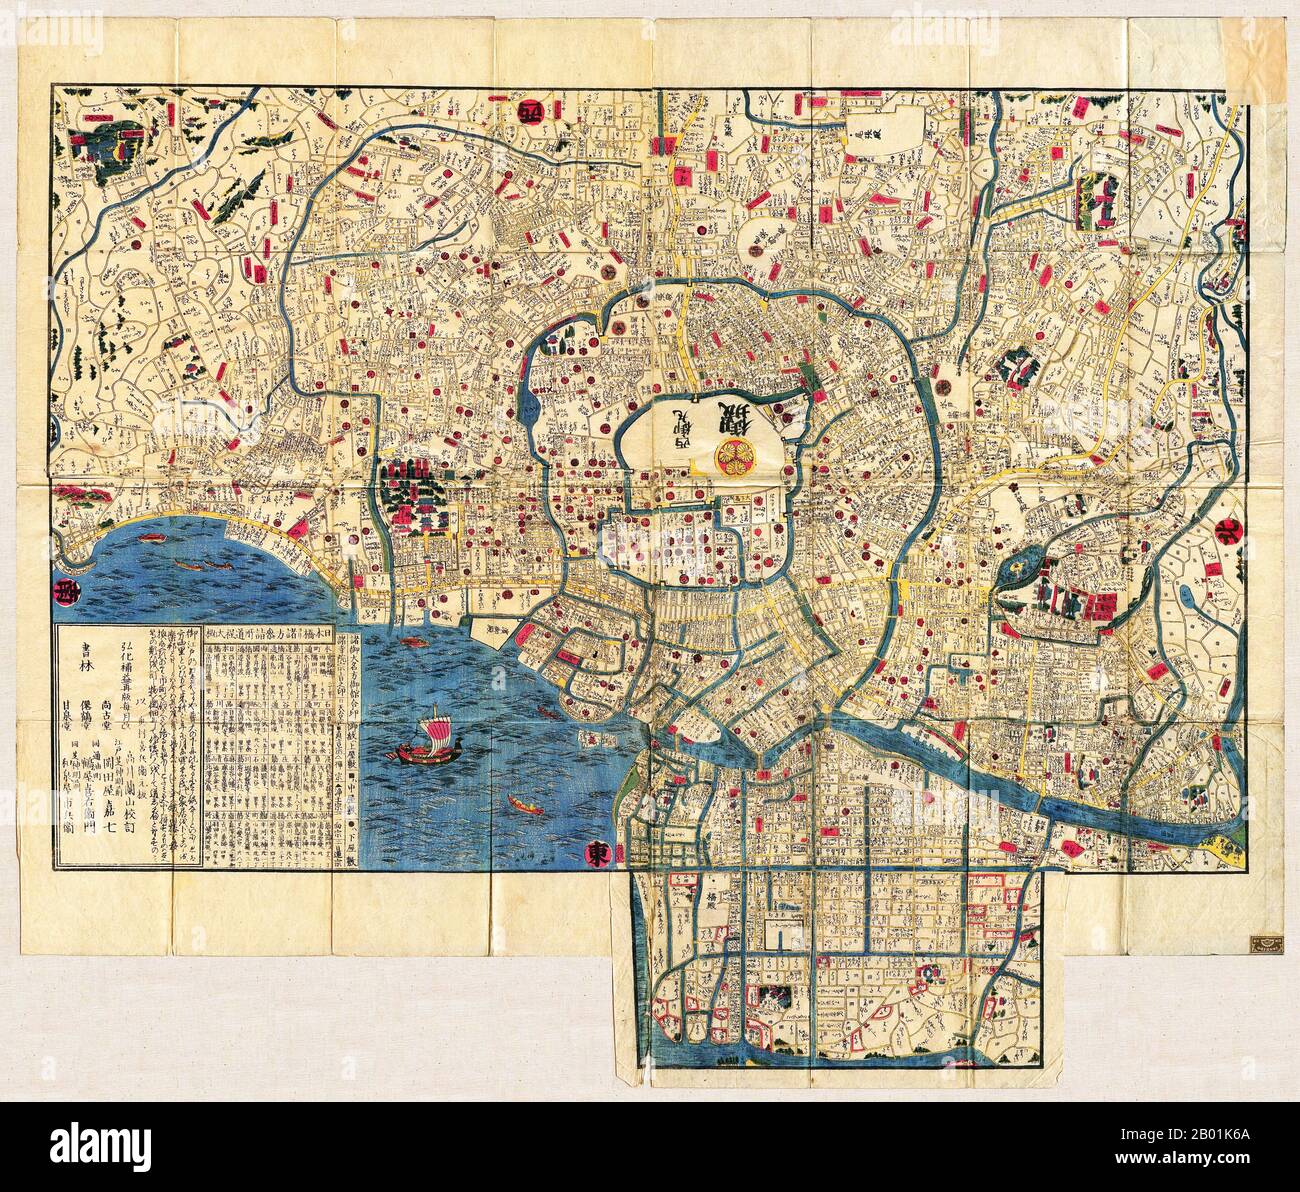 Japan: Karte von Edo (Detail des Zentrums, Spitze ist genau nach Westen), um 1840. Edo (江戸, wörtlich „Bucht-Eingang“ oder „Mündung“), auch als Yedo oder Yeddo romanisiert, ist der frühere Name der japanischen Hauptstadt Tokio und war der Sitz der Macht für das Tokugawa-Shogunat, das Japan von 1603 bis 1868 regierte. In dieser Zeit entwickelte sie sich zu einer der größten Städte der Welt und zum Schauplatz einer lebendigen städtischen Kultur, die sich auf die Vorstellungen der „schwimmenden Welt“ konzentrierte. Stockfoto